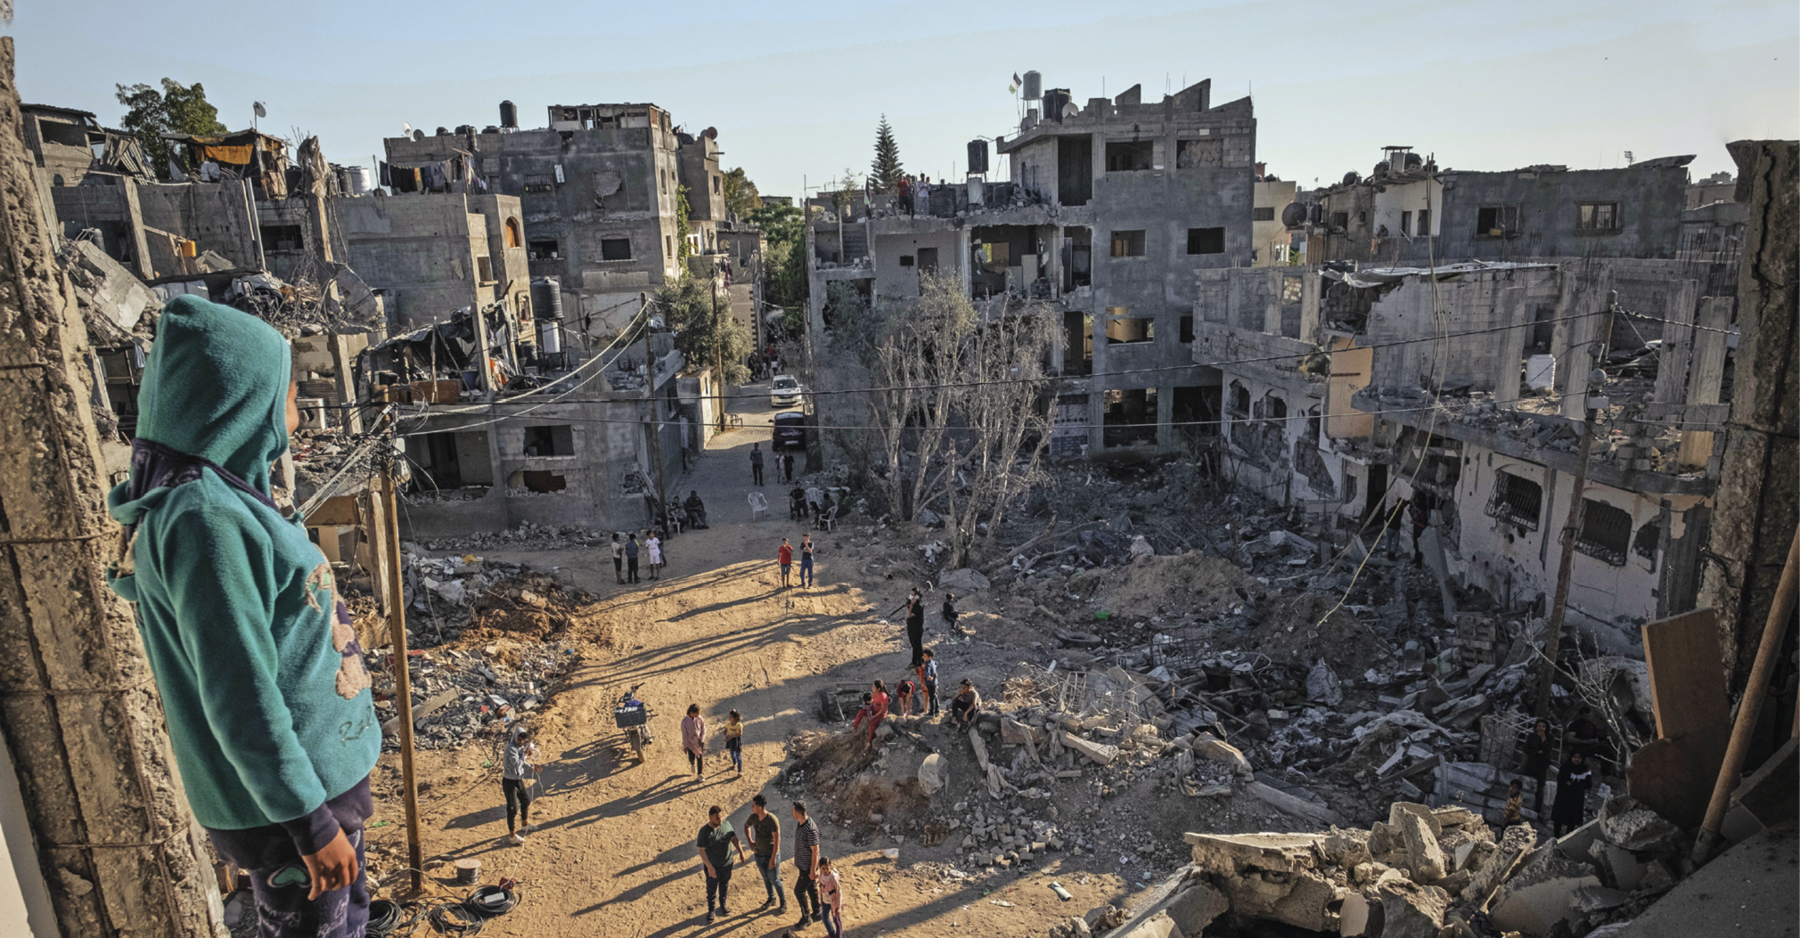 Fotografia. Em primeiro plano, mulher no alto, observa as casas e prédios em ruínas. No centro da imagem, algumas pessoas estão entre os escombros, observando o que restou do local.